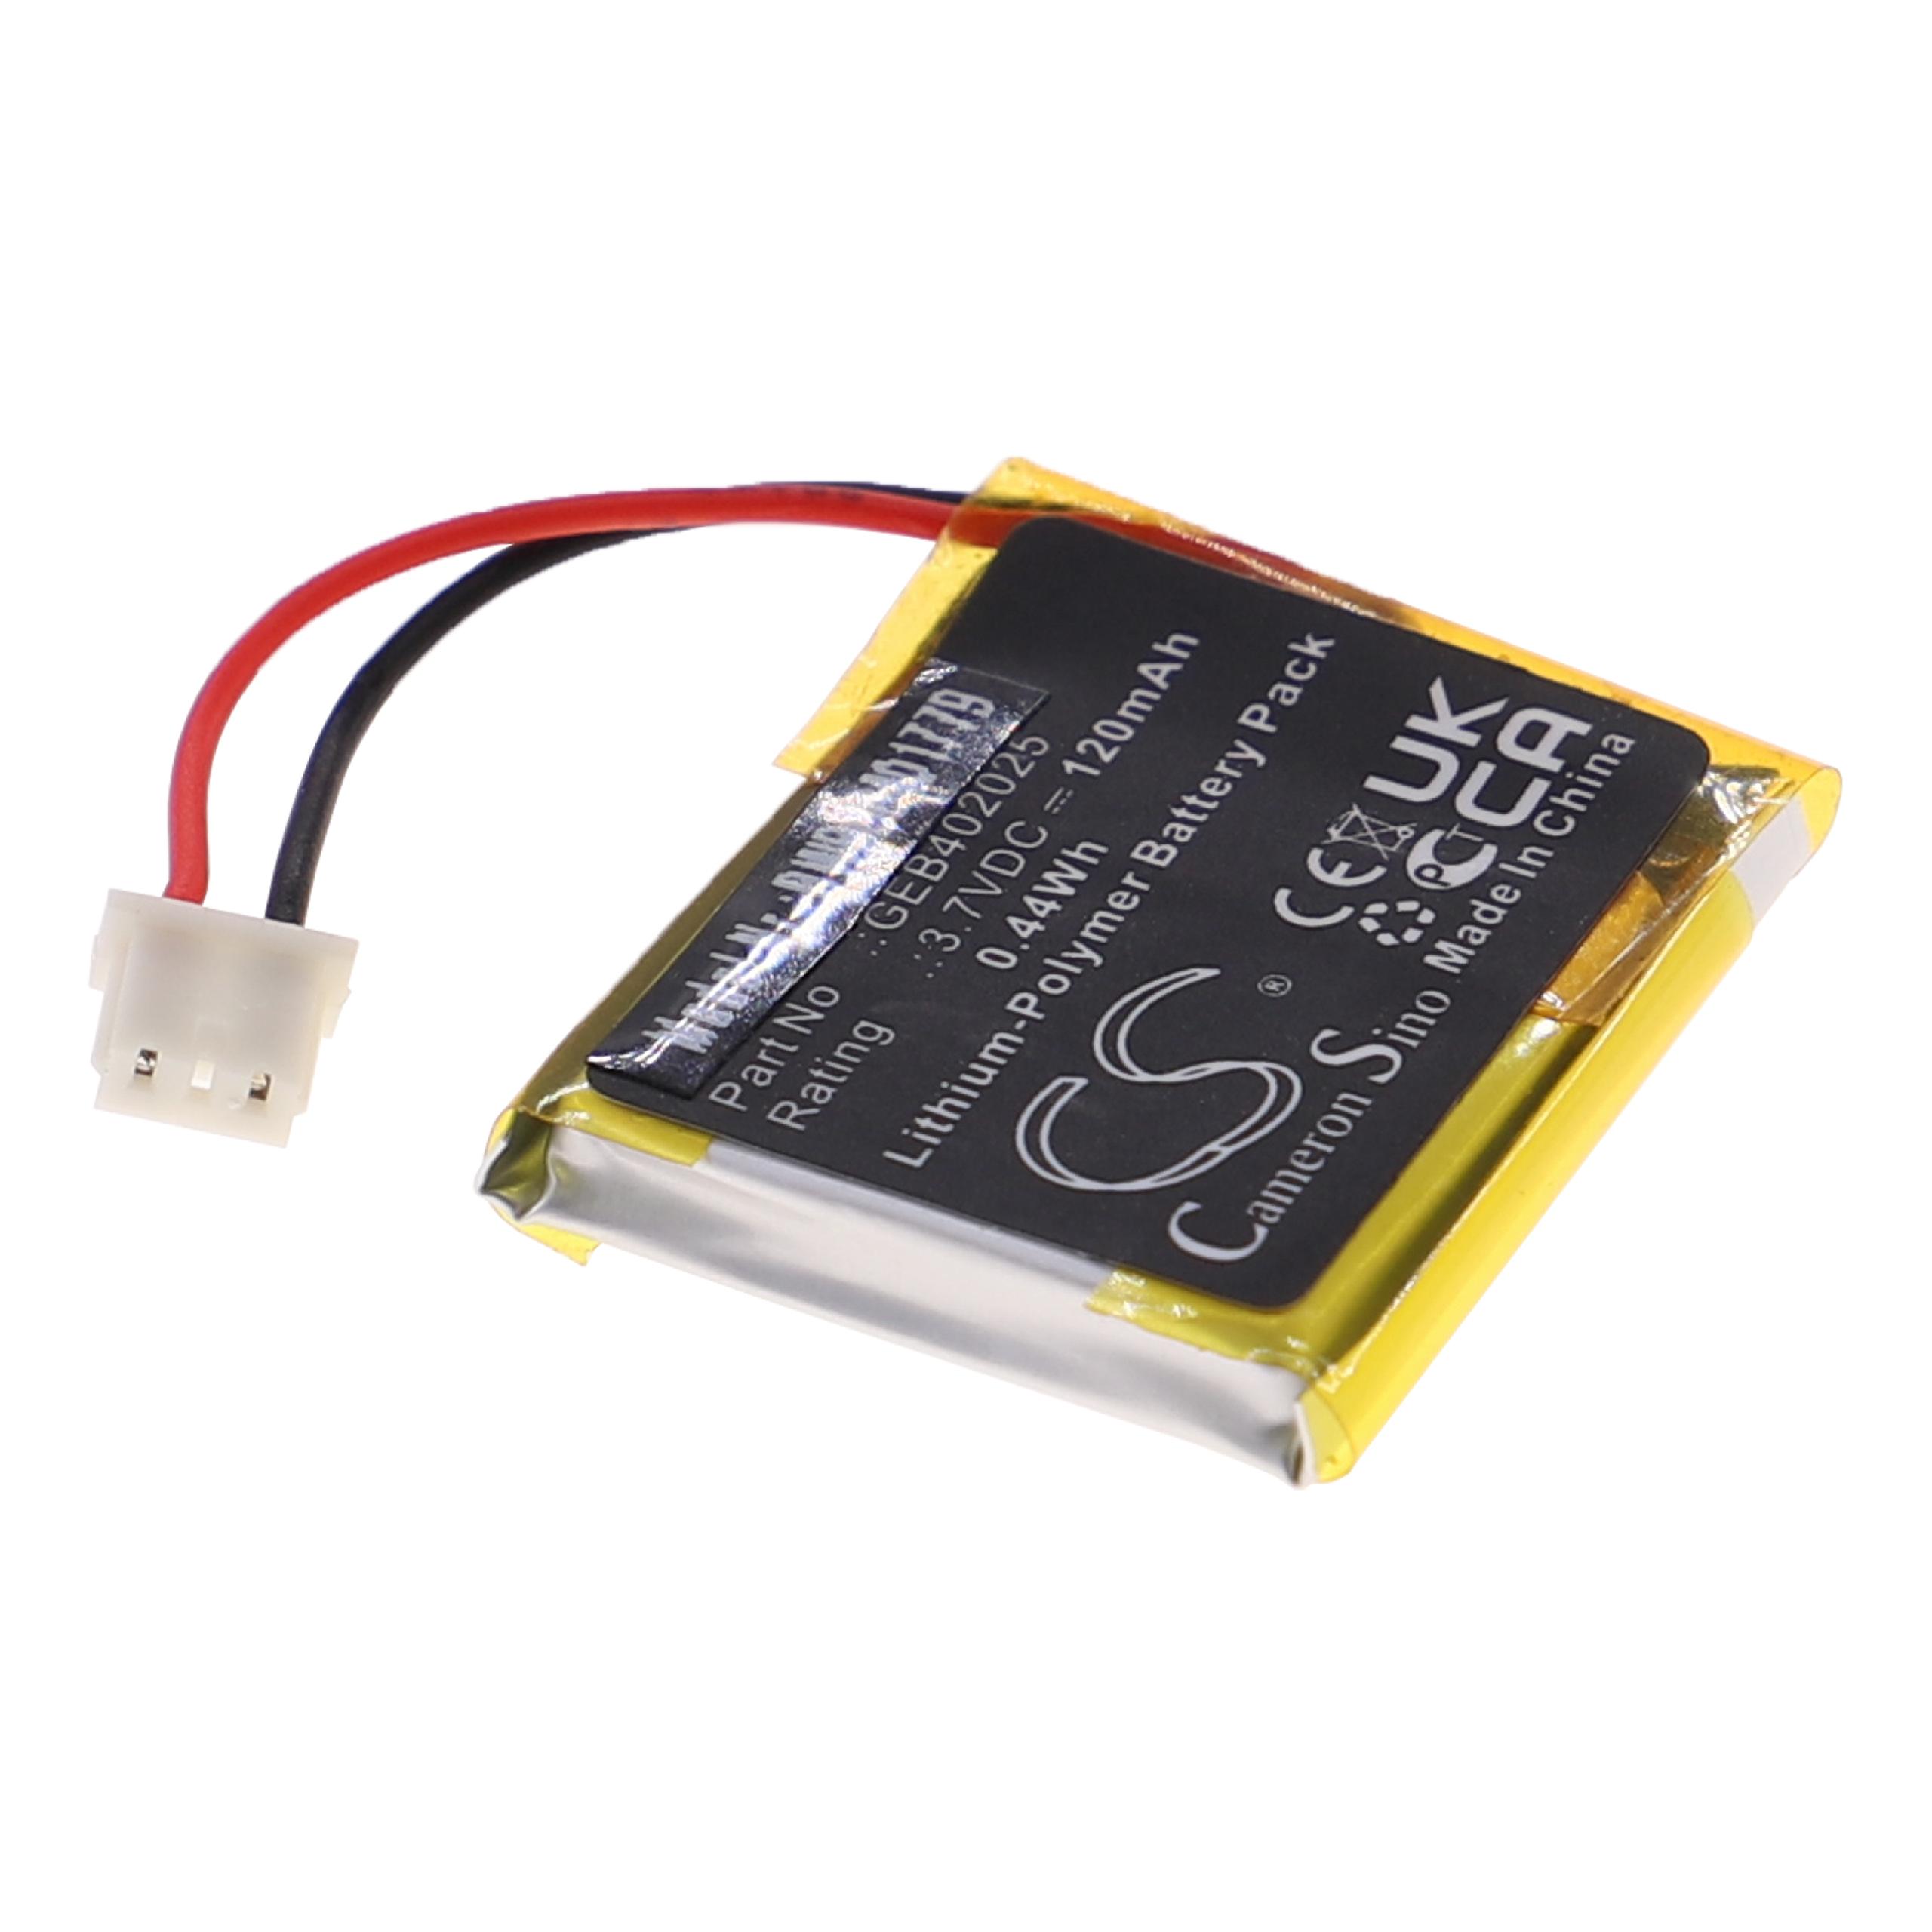 Batteria per telecomando remote controller sostituisce Viper GEB402025 Clifford - 120mAh 3,7V Li-Poly